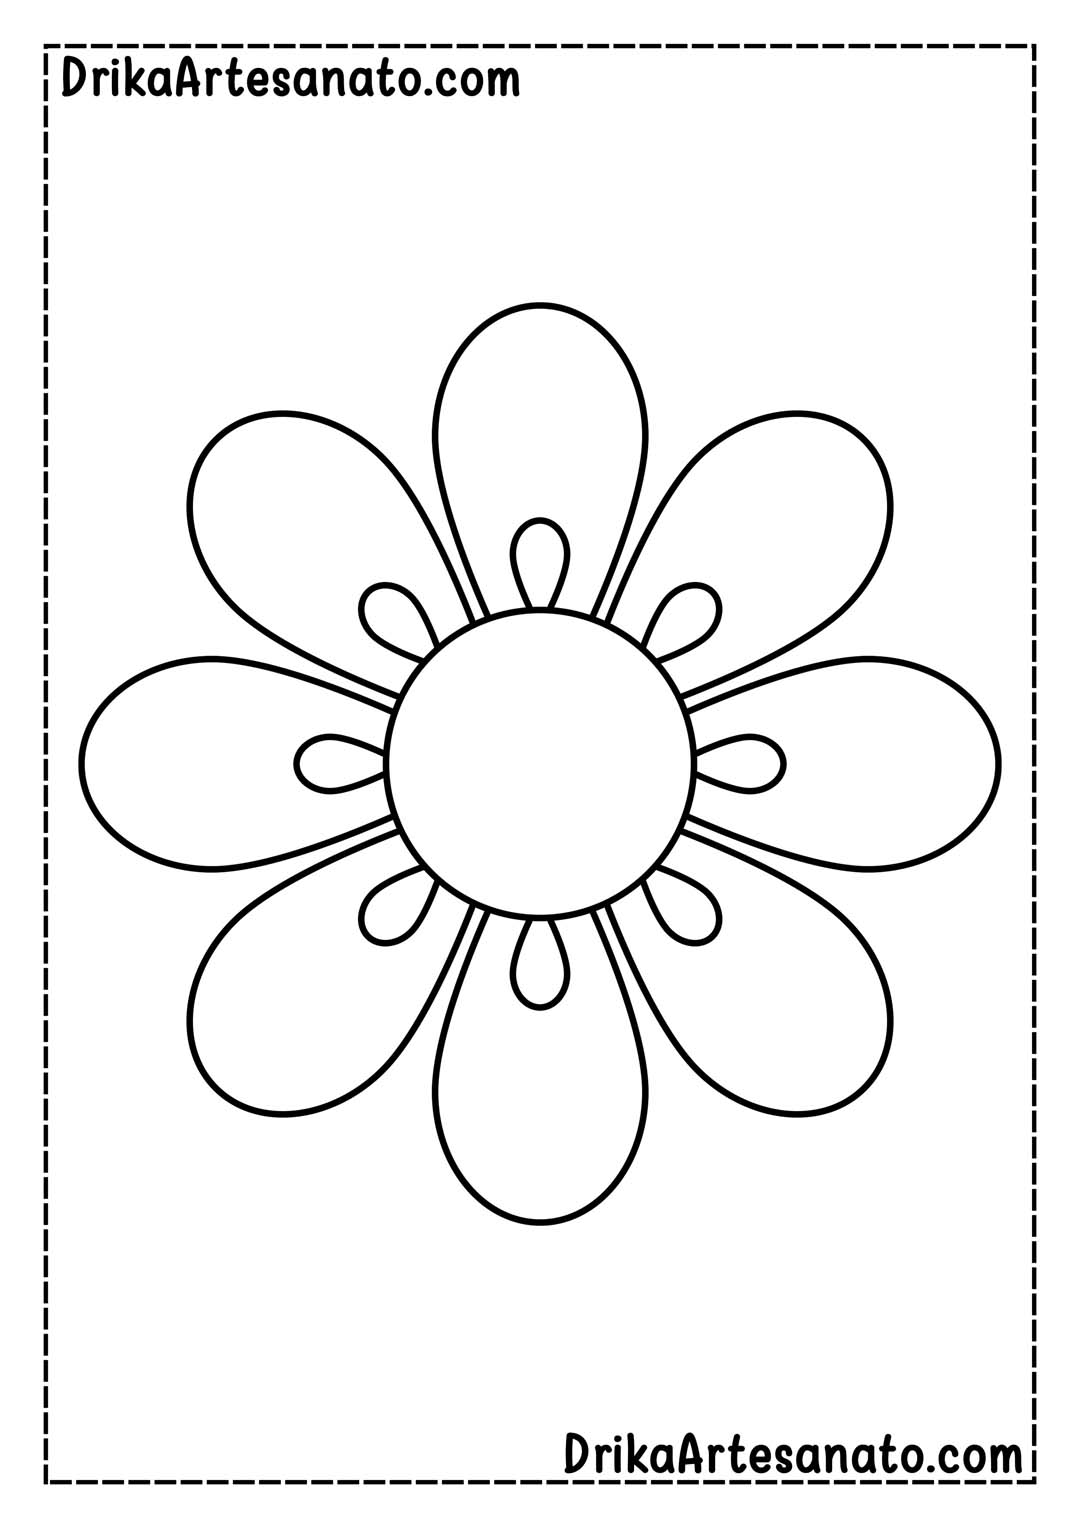 Desenho de Flor Grande com 8 Pétalas para Imprimir em Tamanho Real